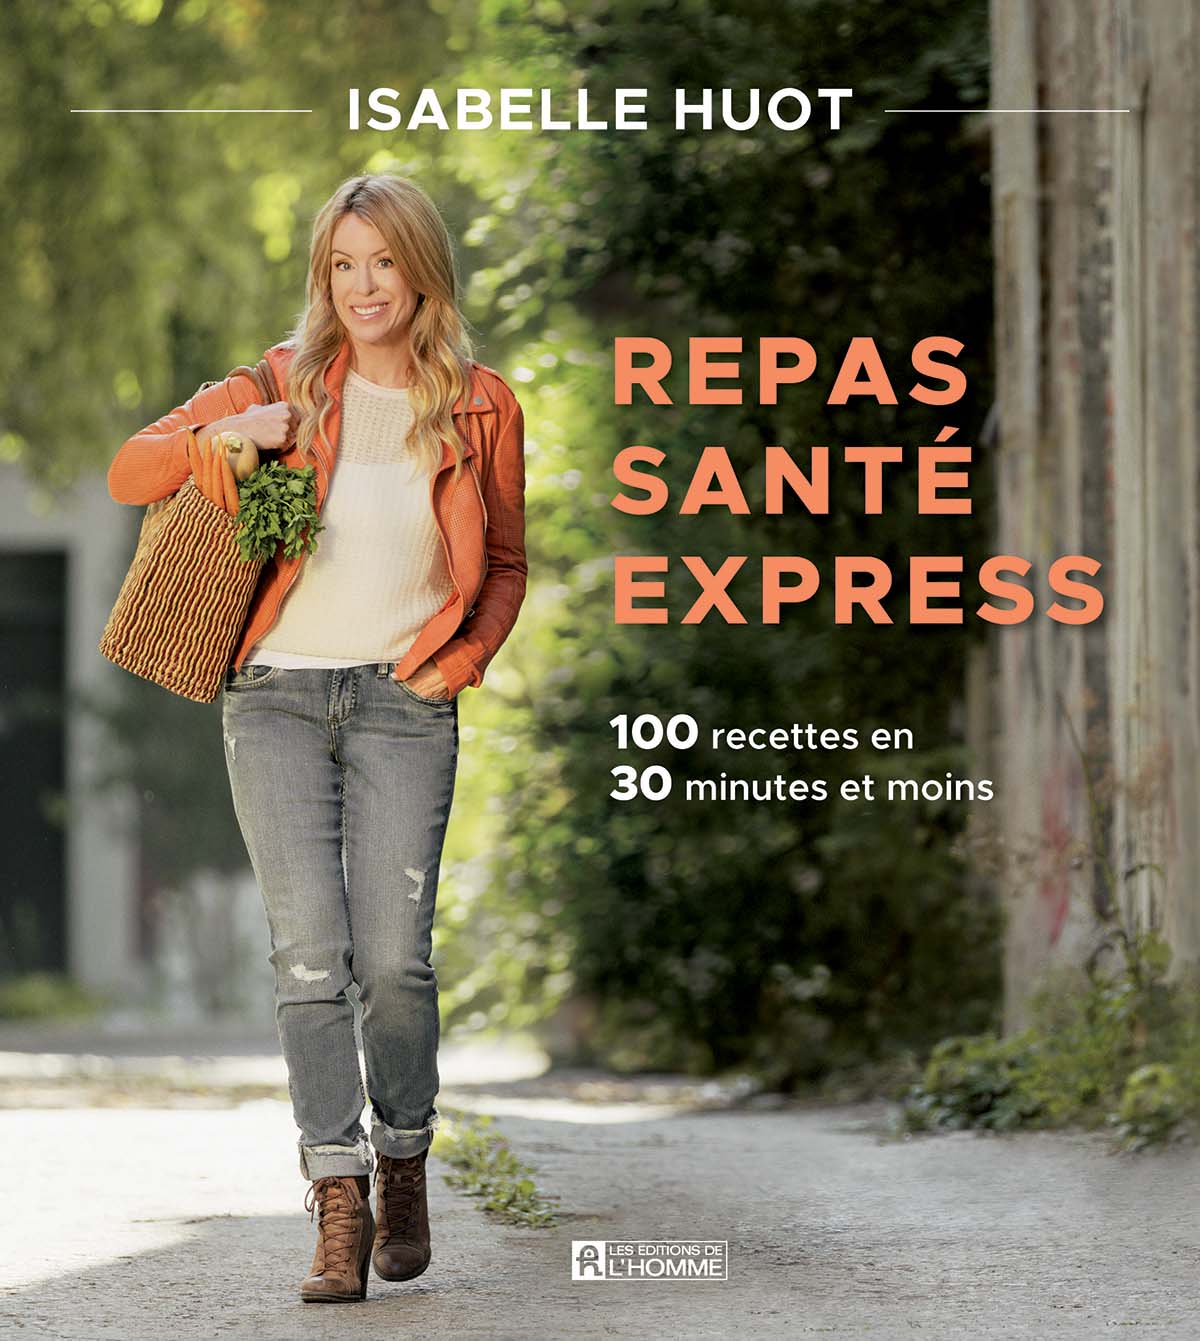 Photo de la couverture du livre d'Isabelle Huot "repas santé express" avec une écriture "100 recettes en 30 minutes et moins" accompagné d'une photo d'Isabelle Huot souriante, debout marchant dans une rue avec un panier rempli de légumes sous le bras.